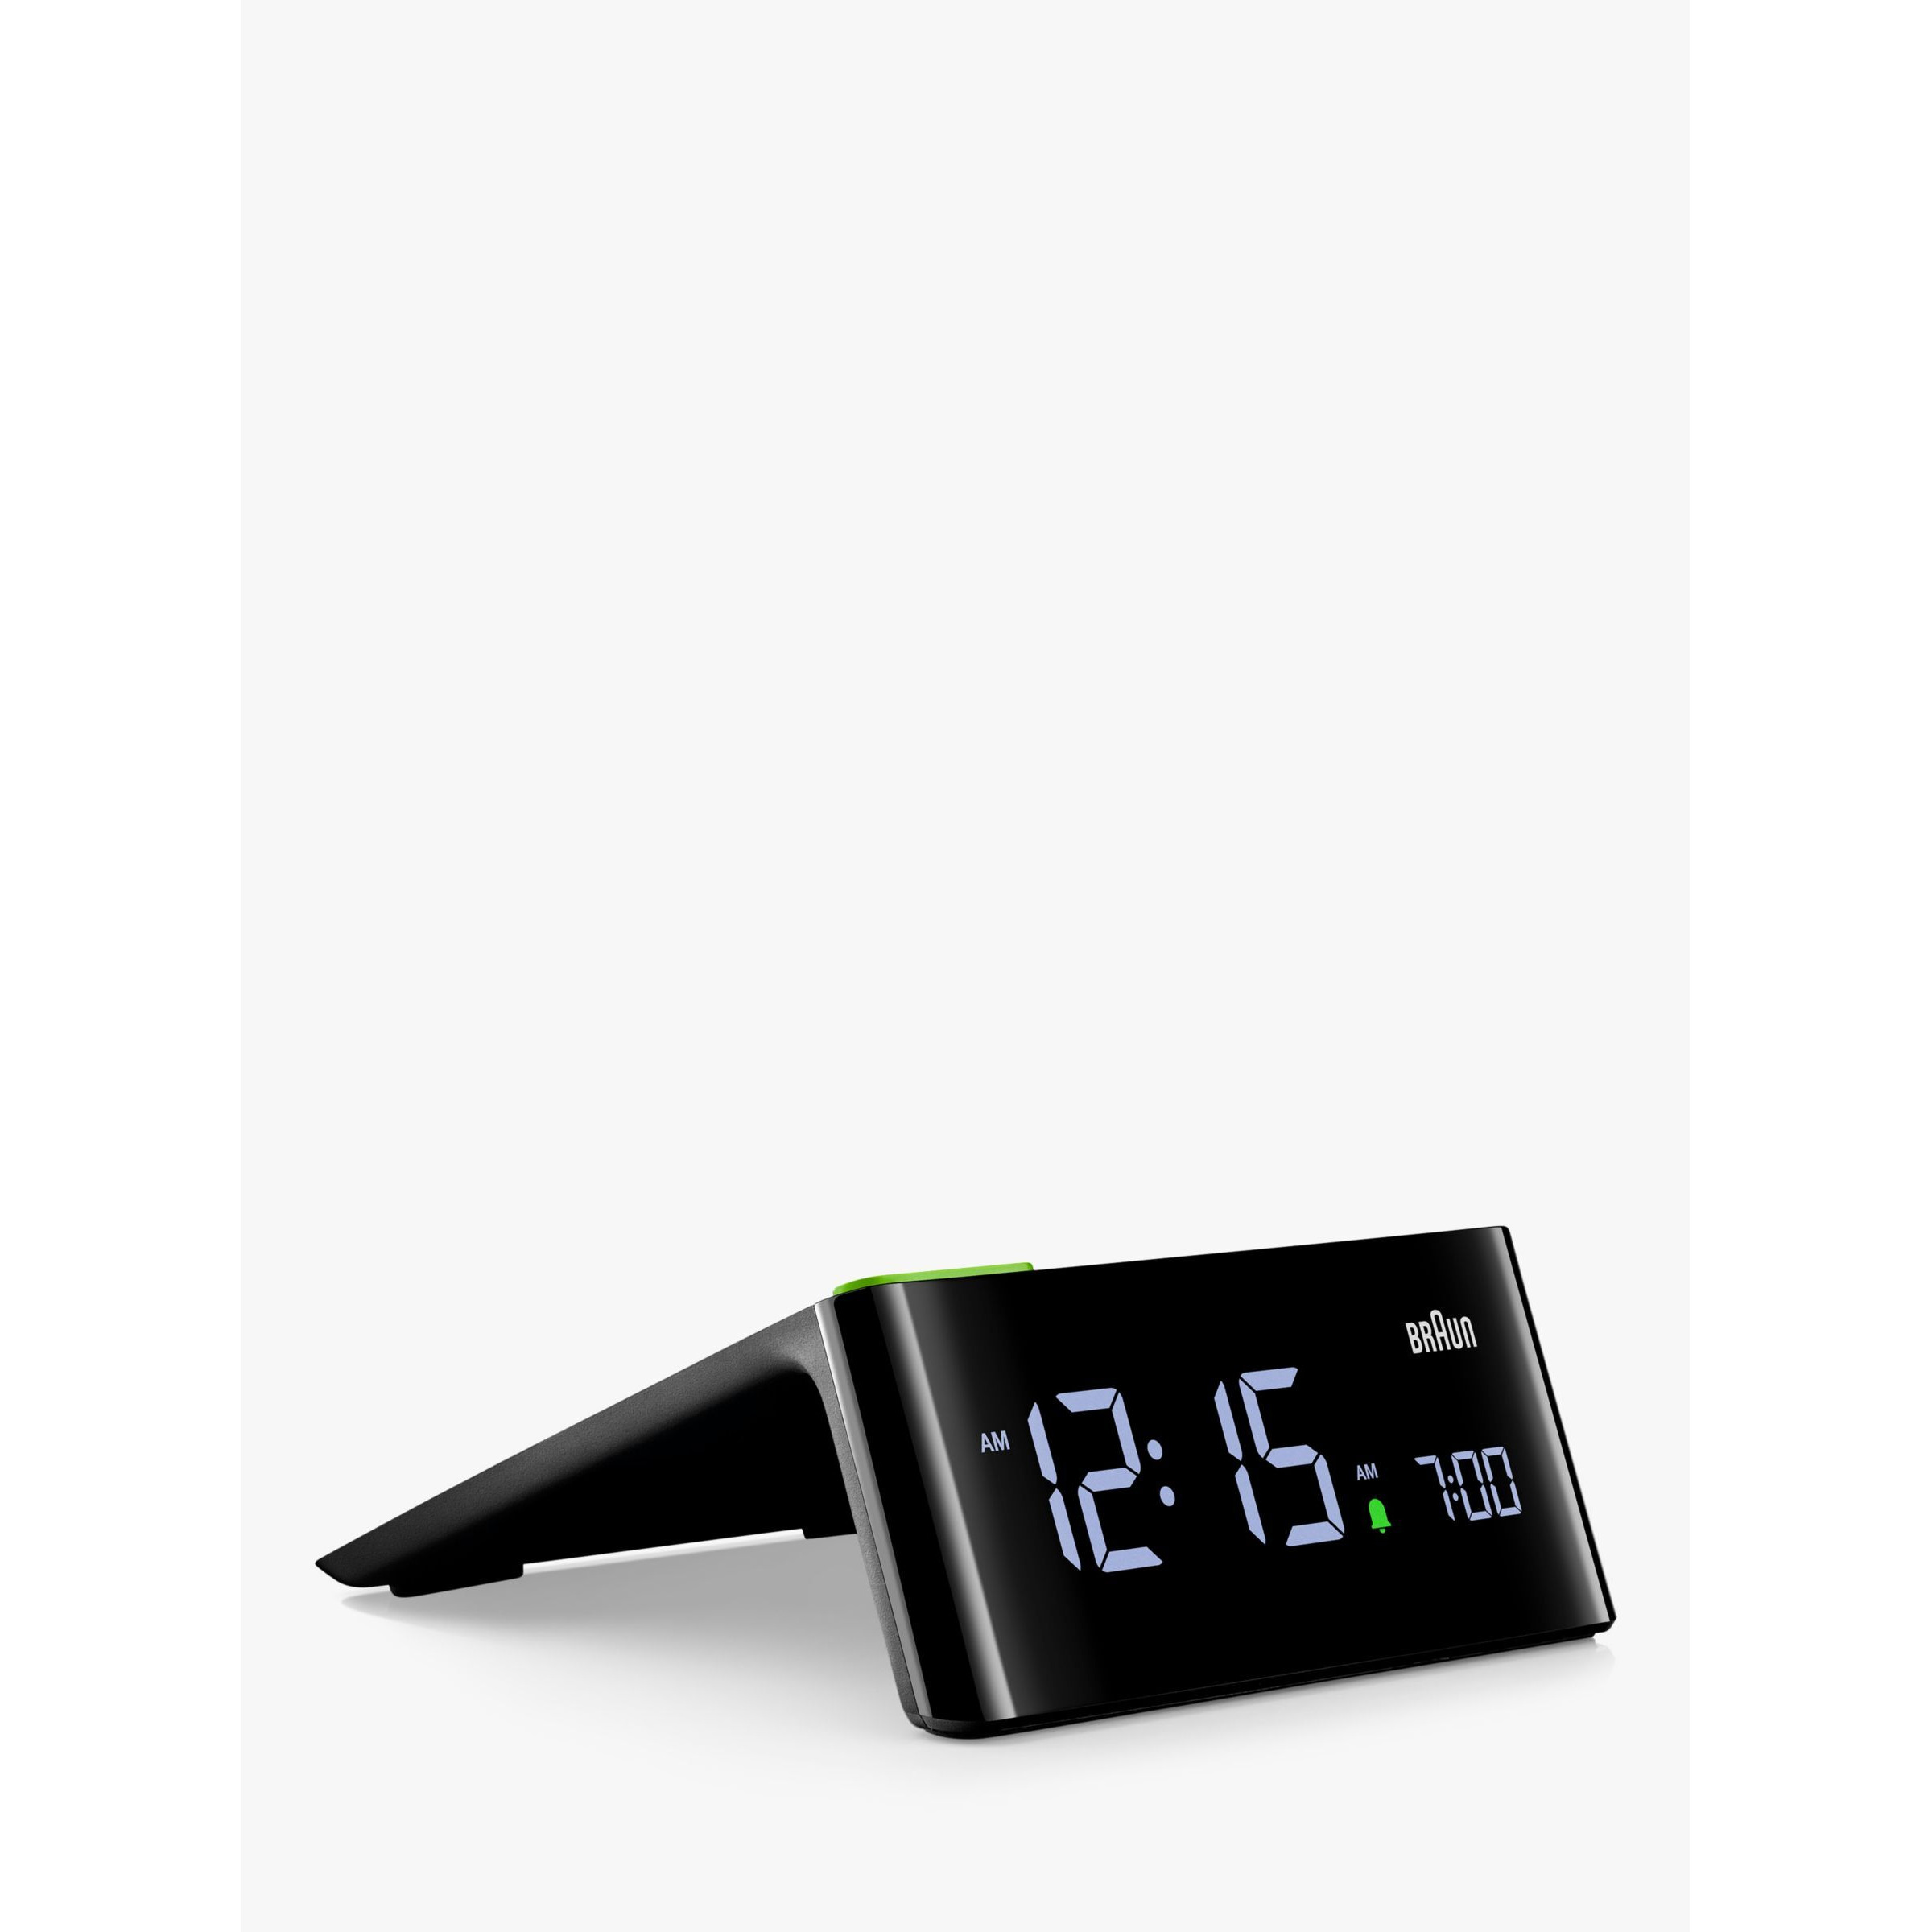 Braun BC16 Digital VA LCD Alarm Clock, Black - image 1